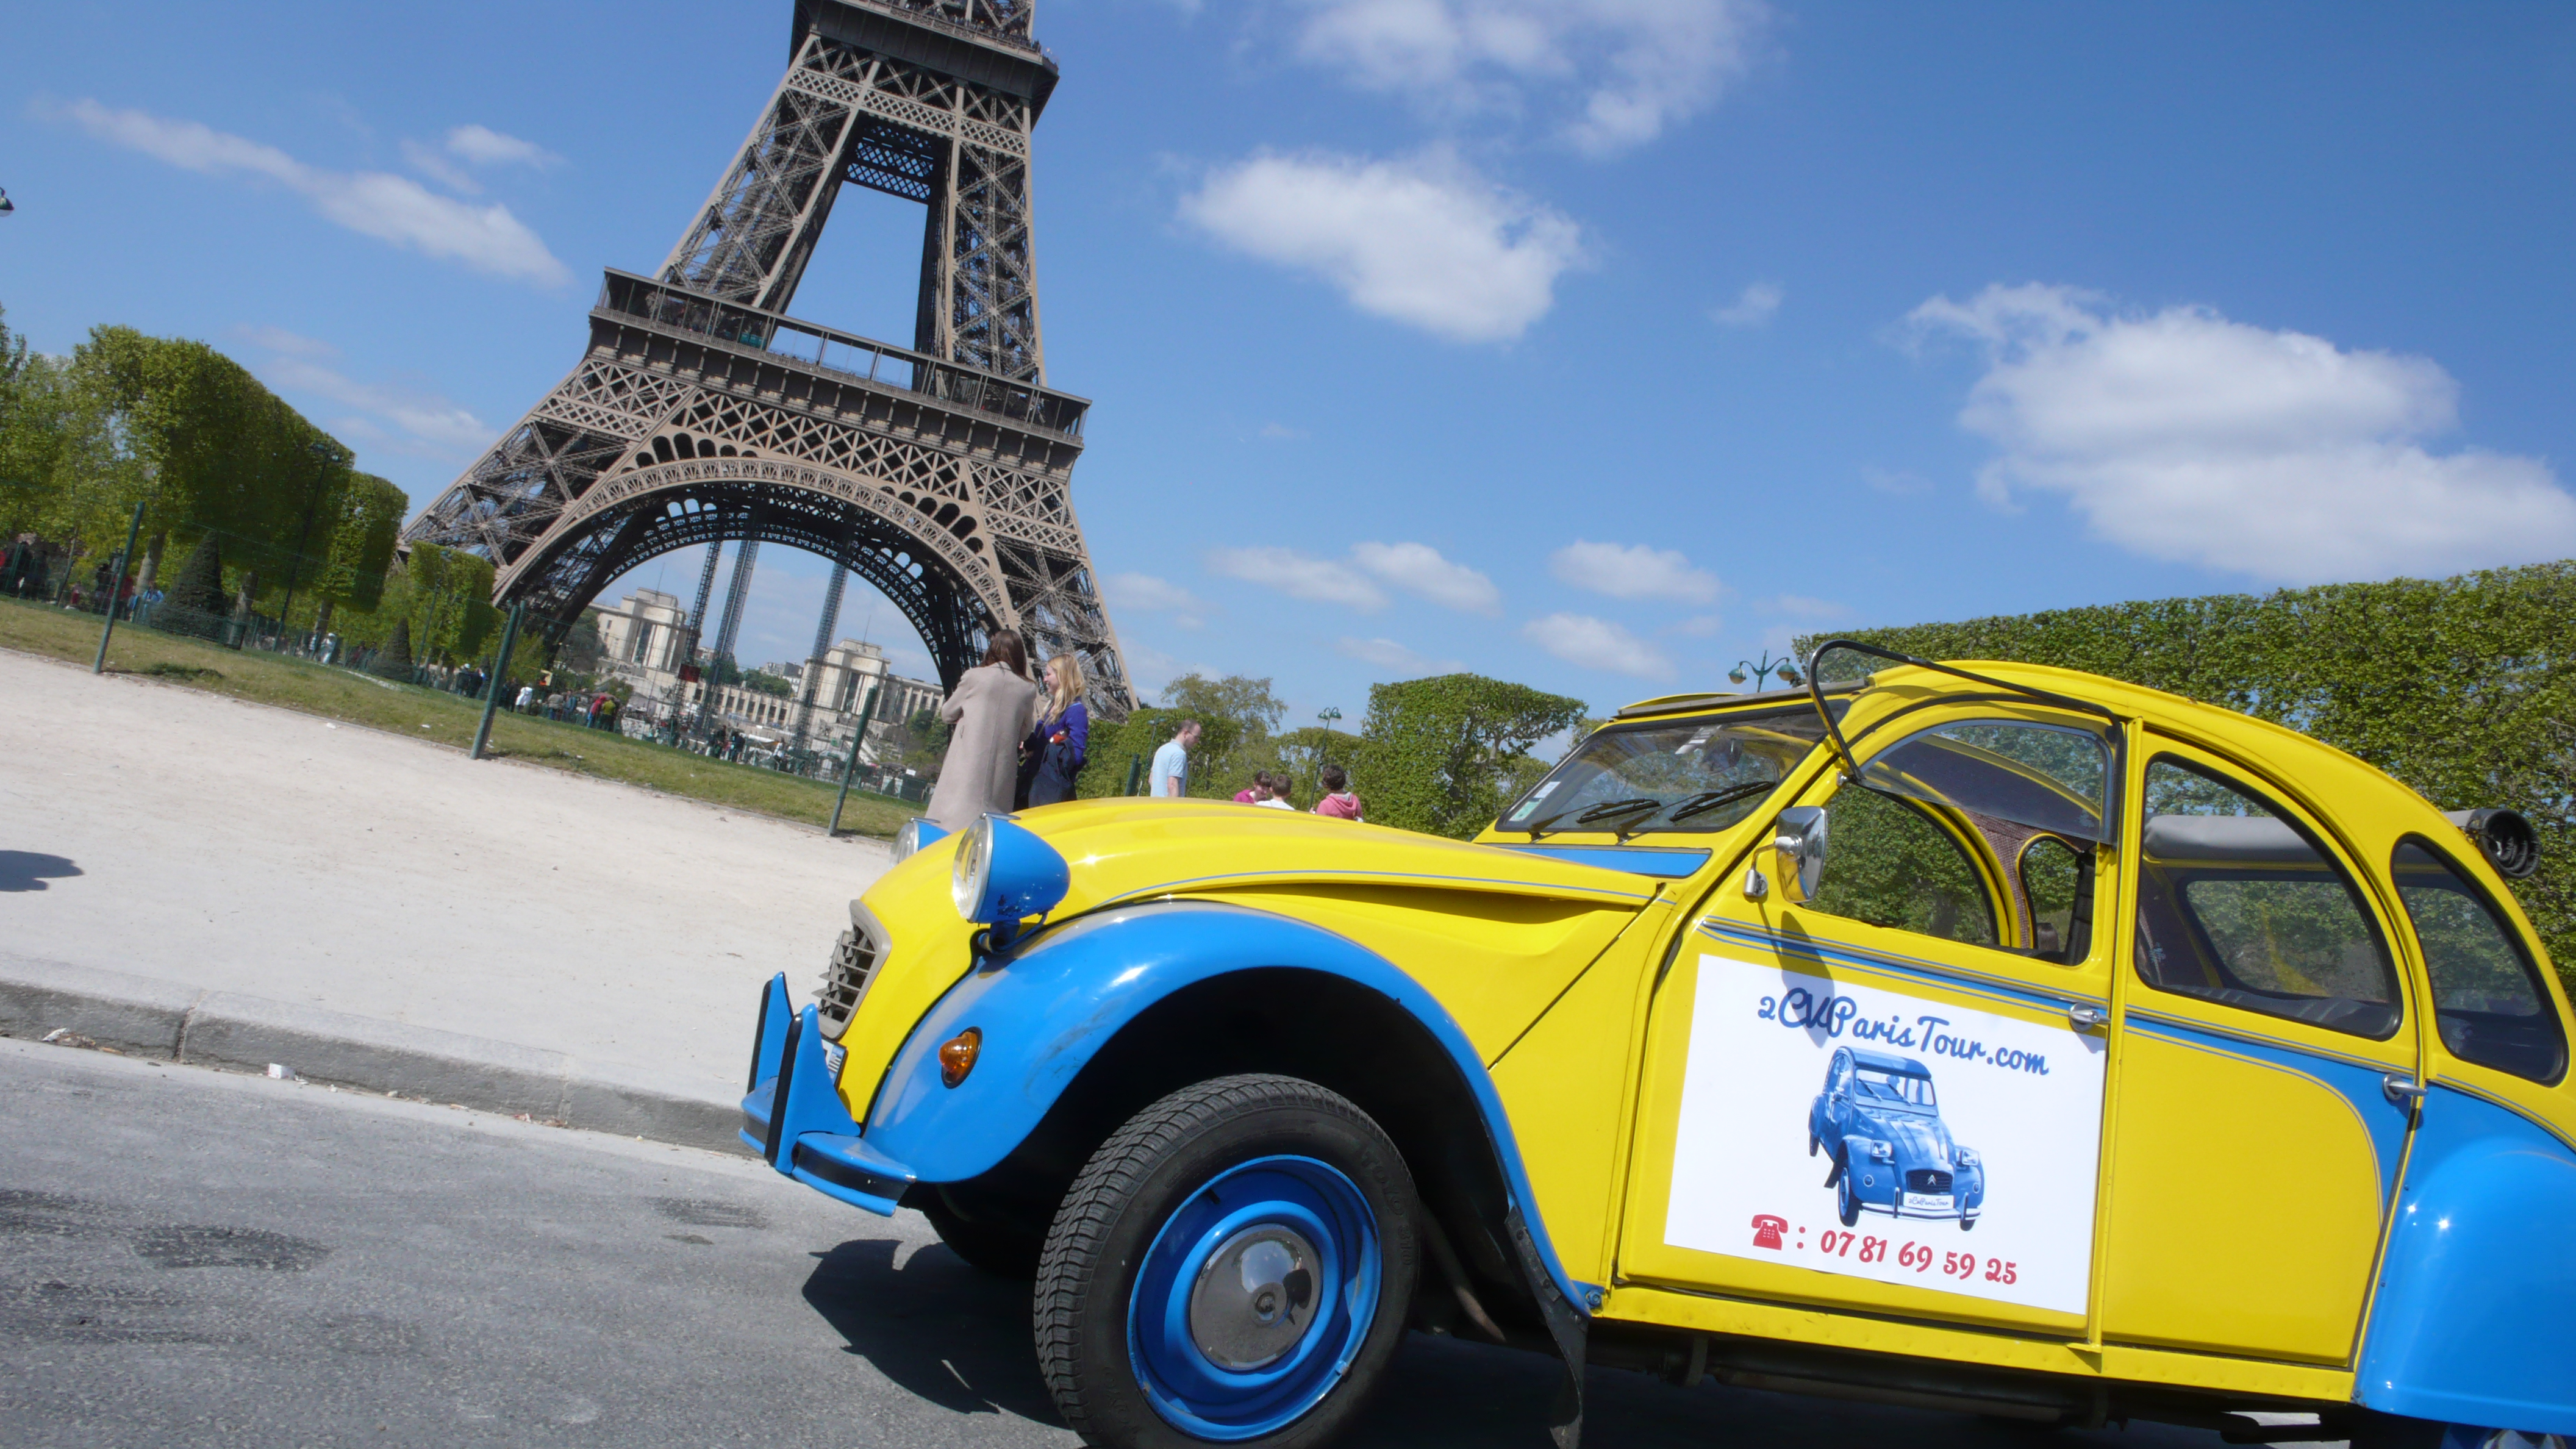 2CV Paris Tour : Visit Paris by 2CV! Eglantine and Place Jacques Rueff